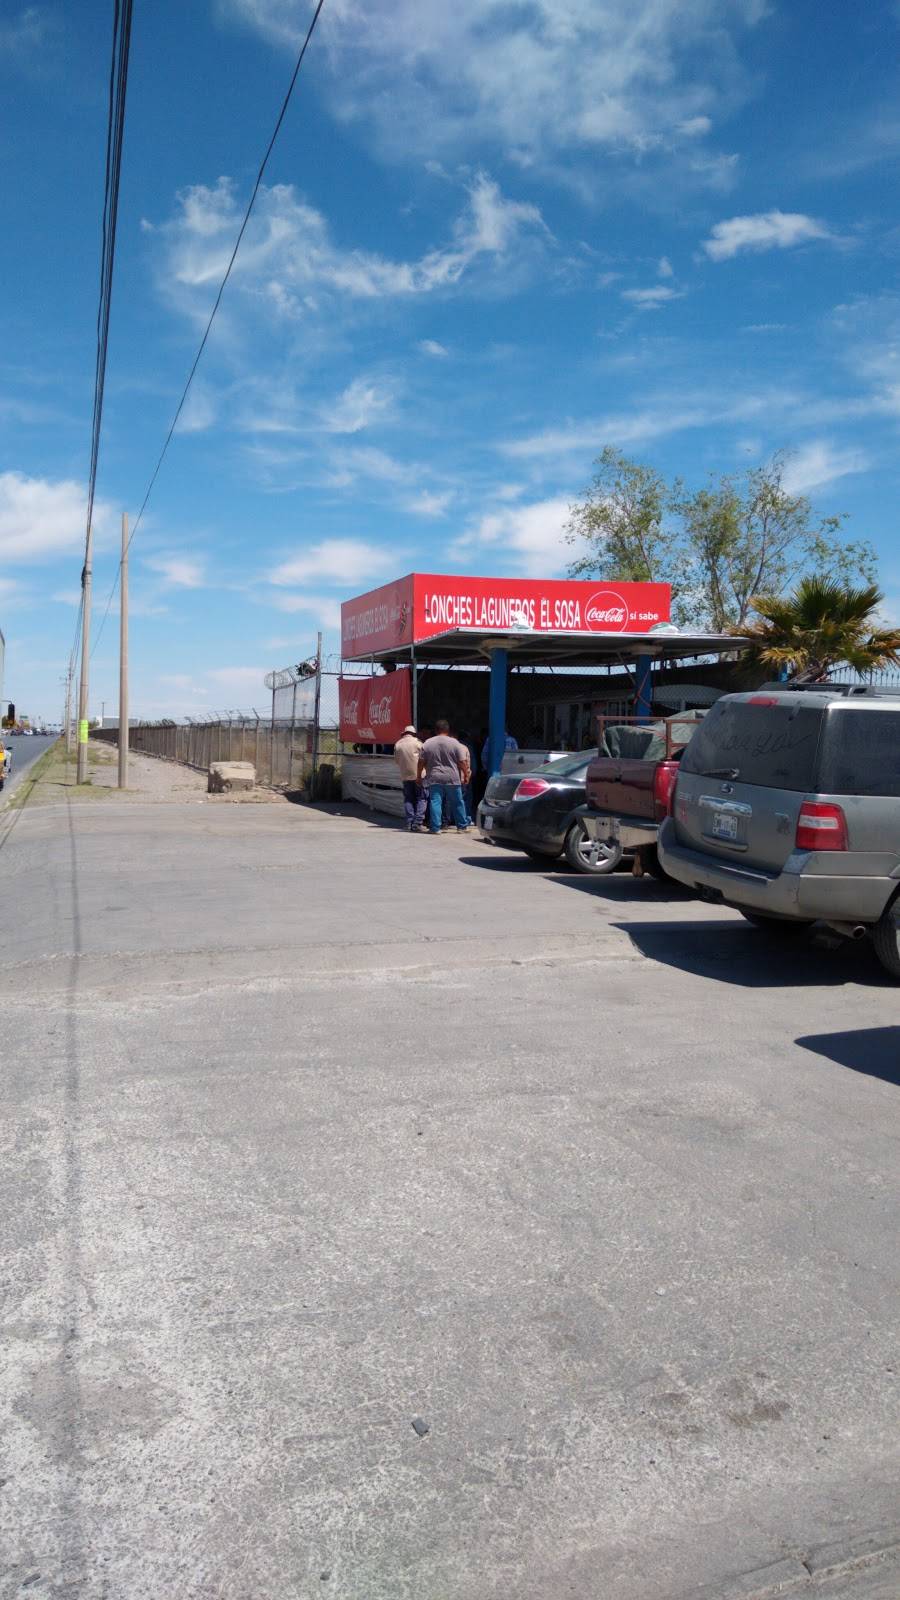 Lonches Laguneros El Sosa | Panamericana 9110, Jardines del Aeropuerto, 32695 Cd Juárez, Chih., Mexico | Phone: 656 319 0005